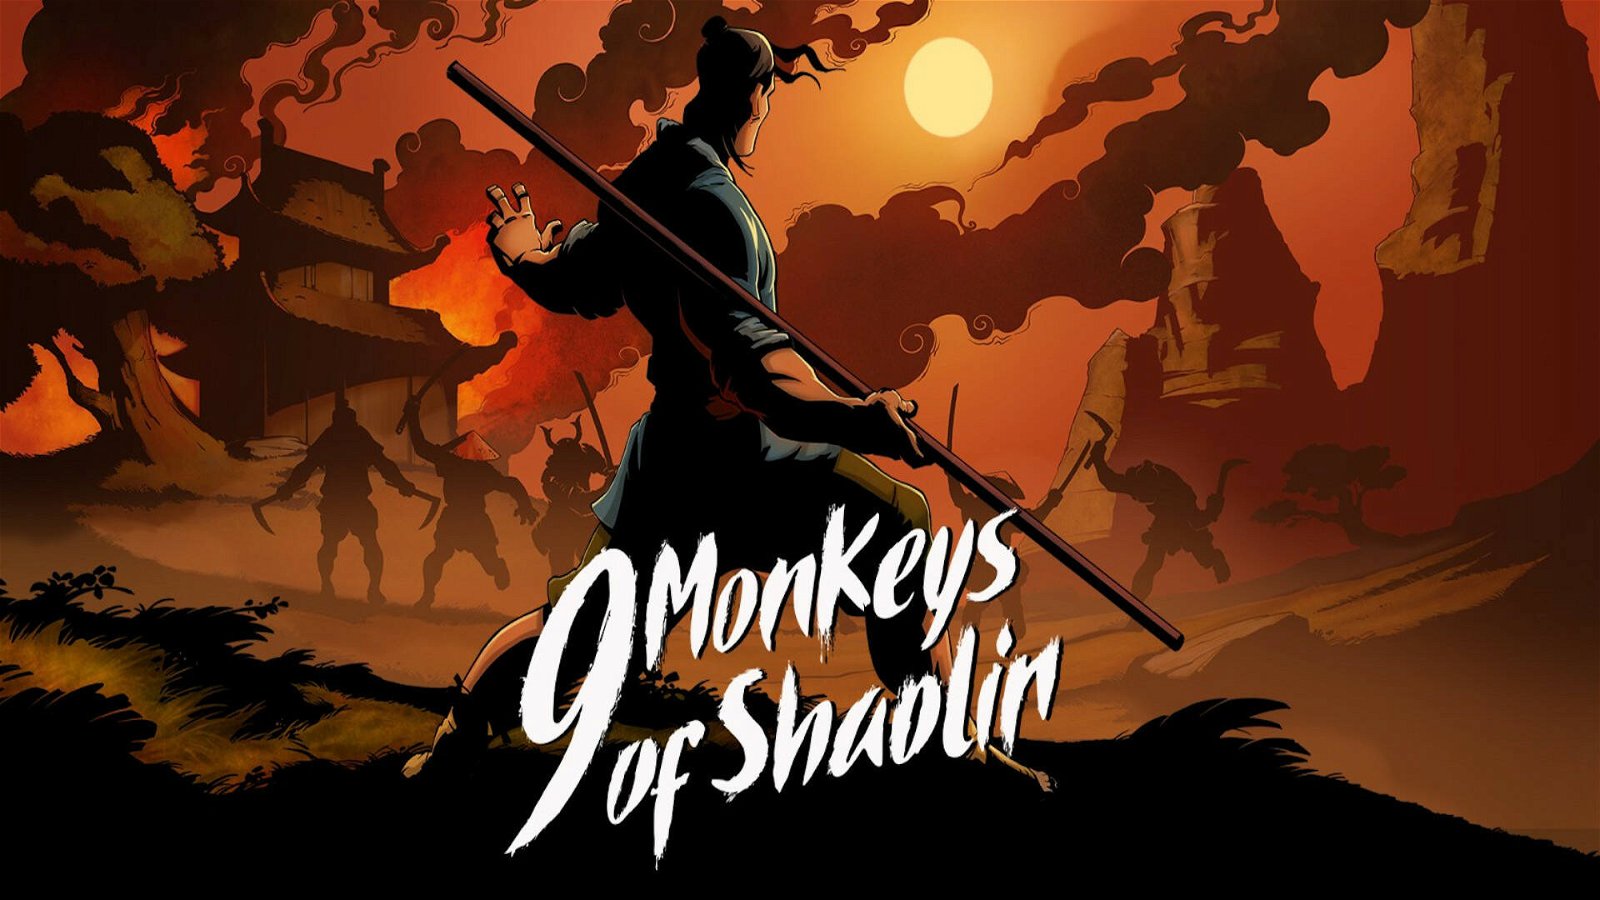 9 Monkeys of Shaolin | Recensione - Rinvigorire lo spirito a suon di pugni